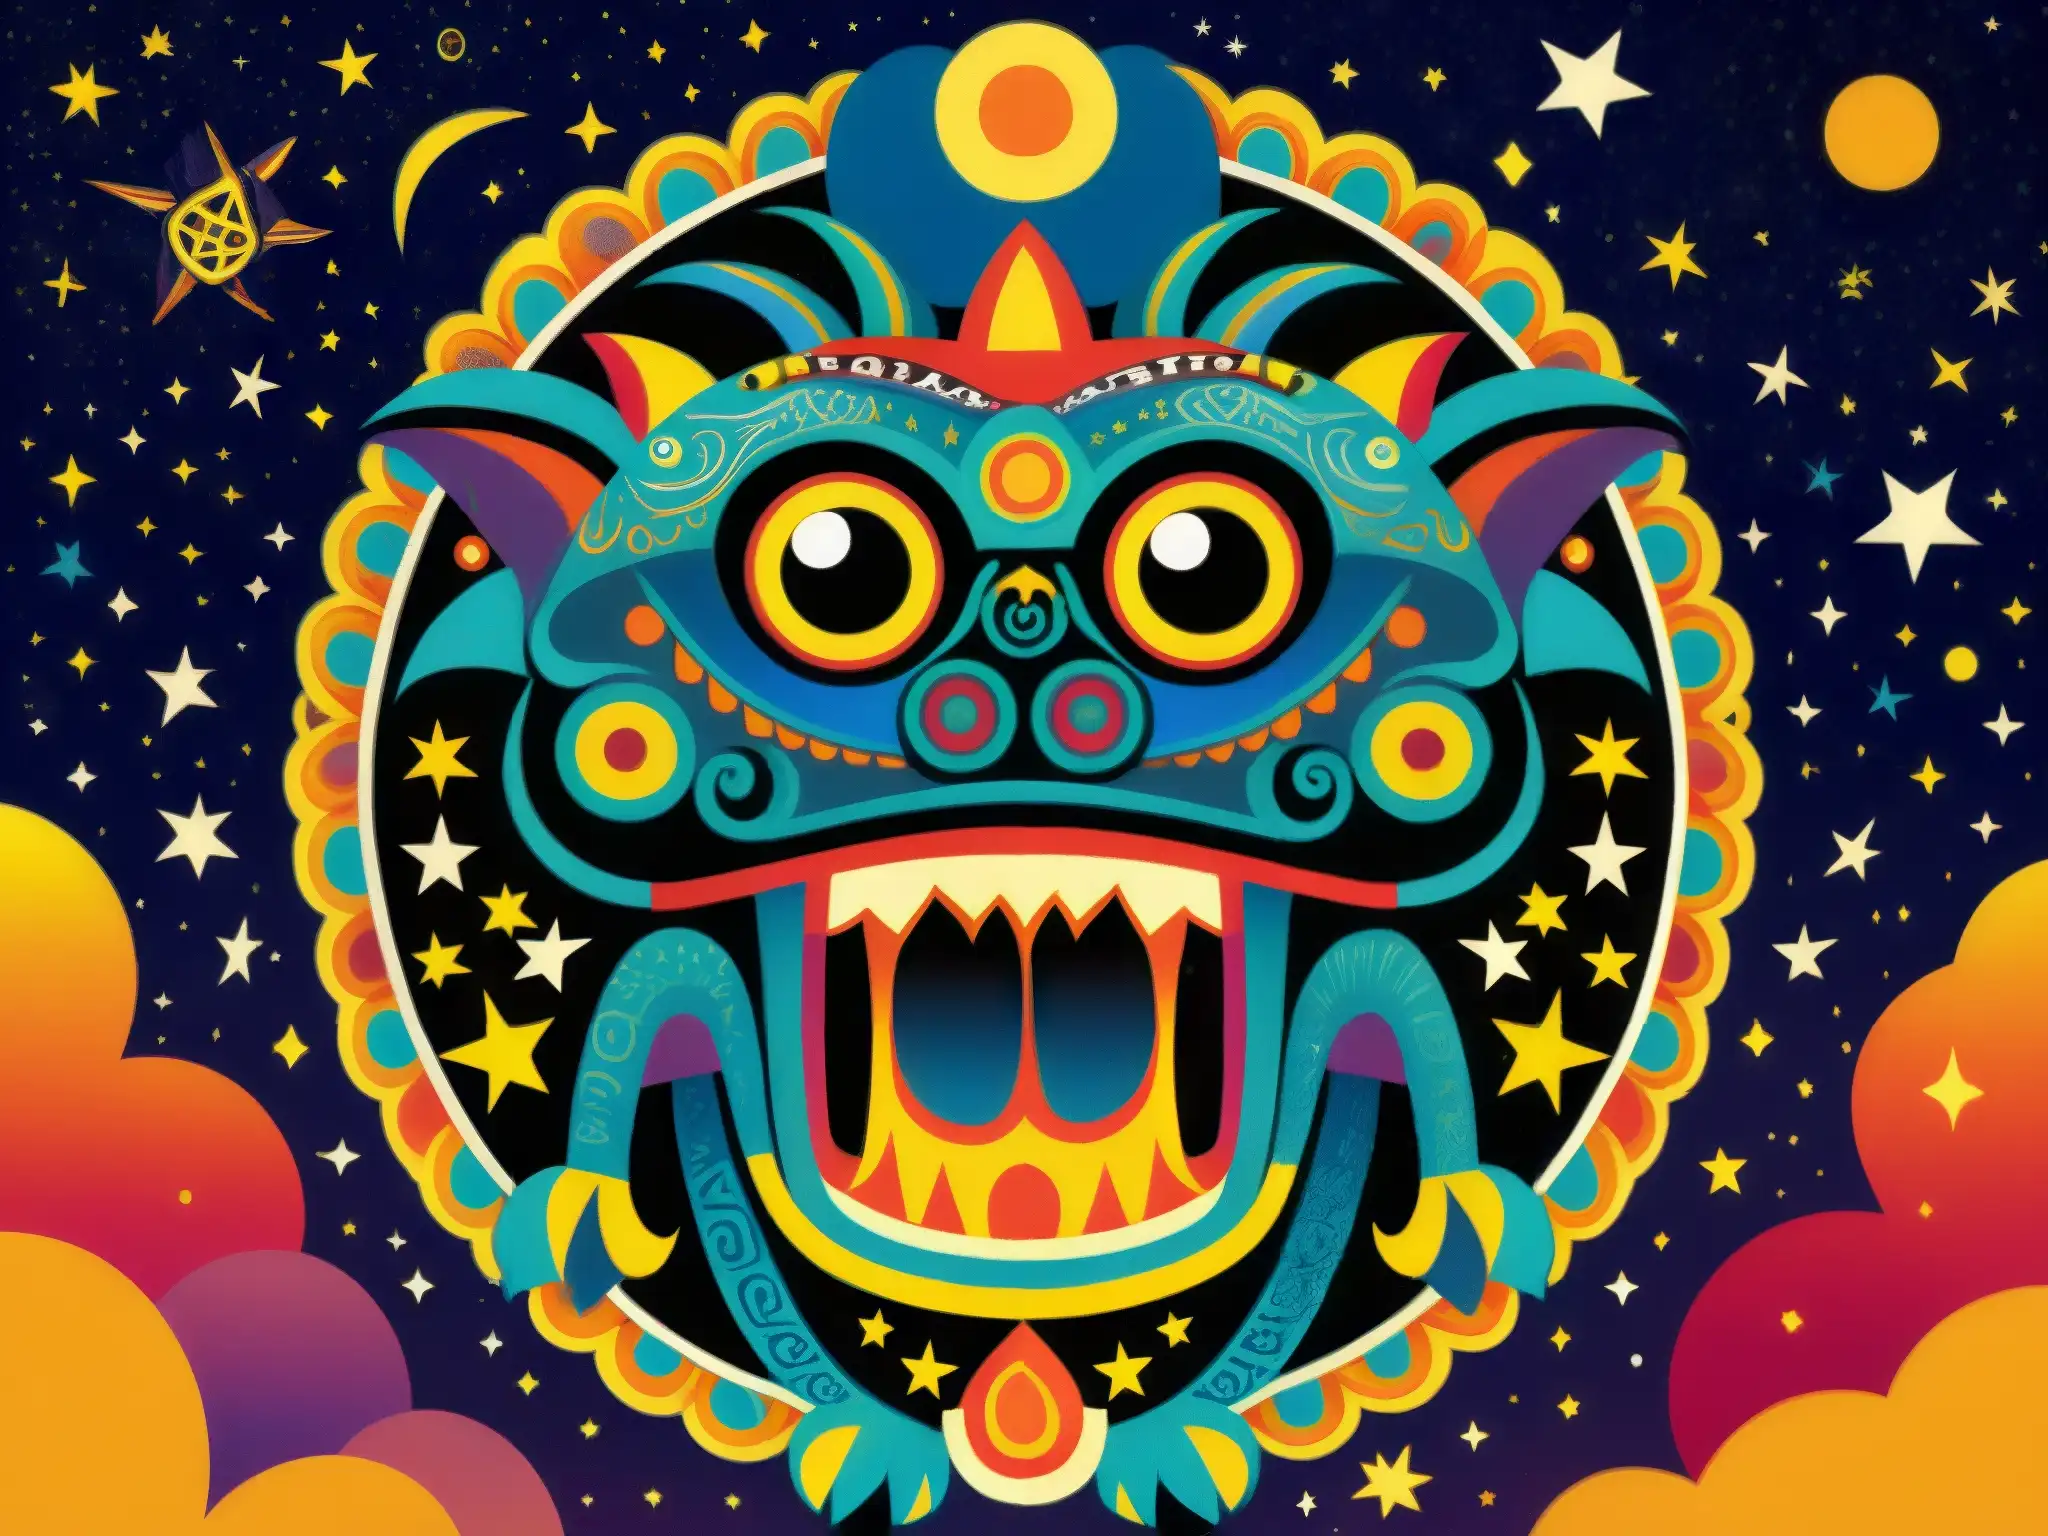 Ilustración detallada de un Tzitzimime, monstruo cósmico de la mitología azteca, con patrones intrincados y colores vibrantes, mostrado sobre la tierra con cielos estrellados de fondo